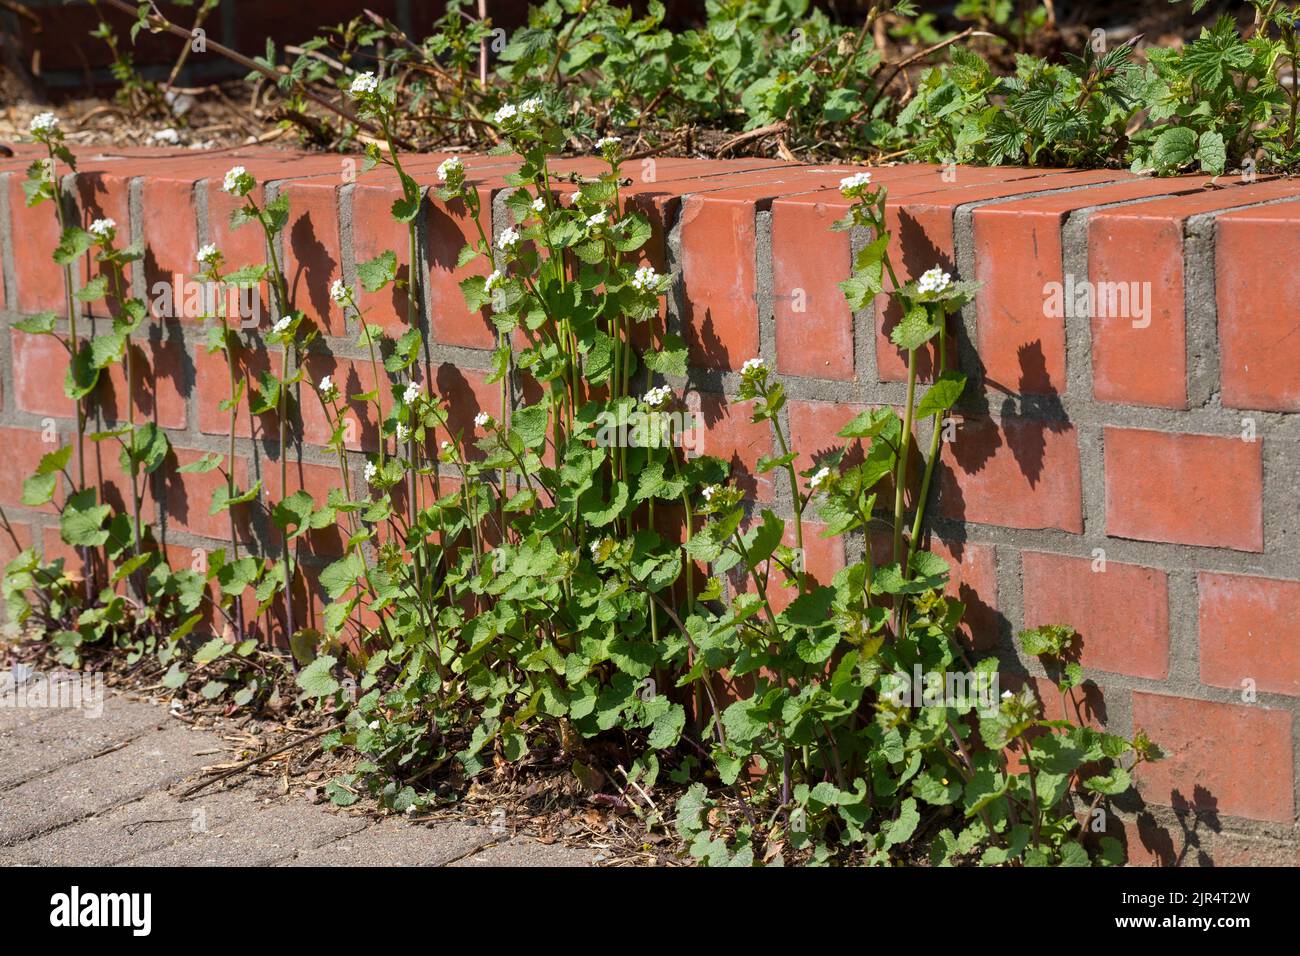 La senape all'aglio, l'aglio dell'orlo, Jack-by-the-Hedge (Alliaria petiolata), cresce in una fessura di pavimentazione lungo un muro, in Germania Foto Stock